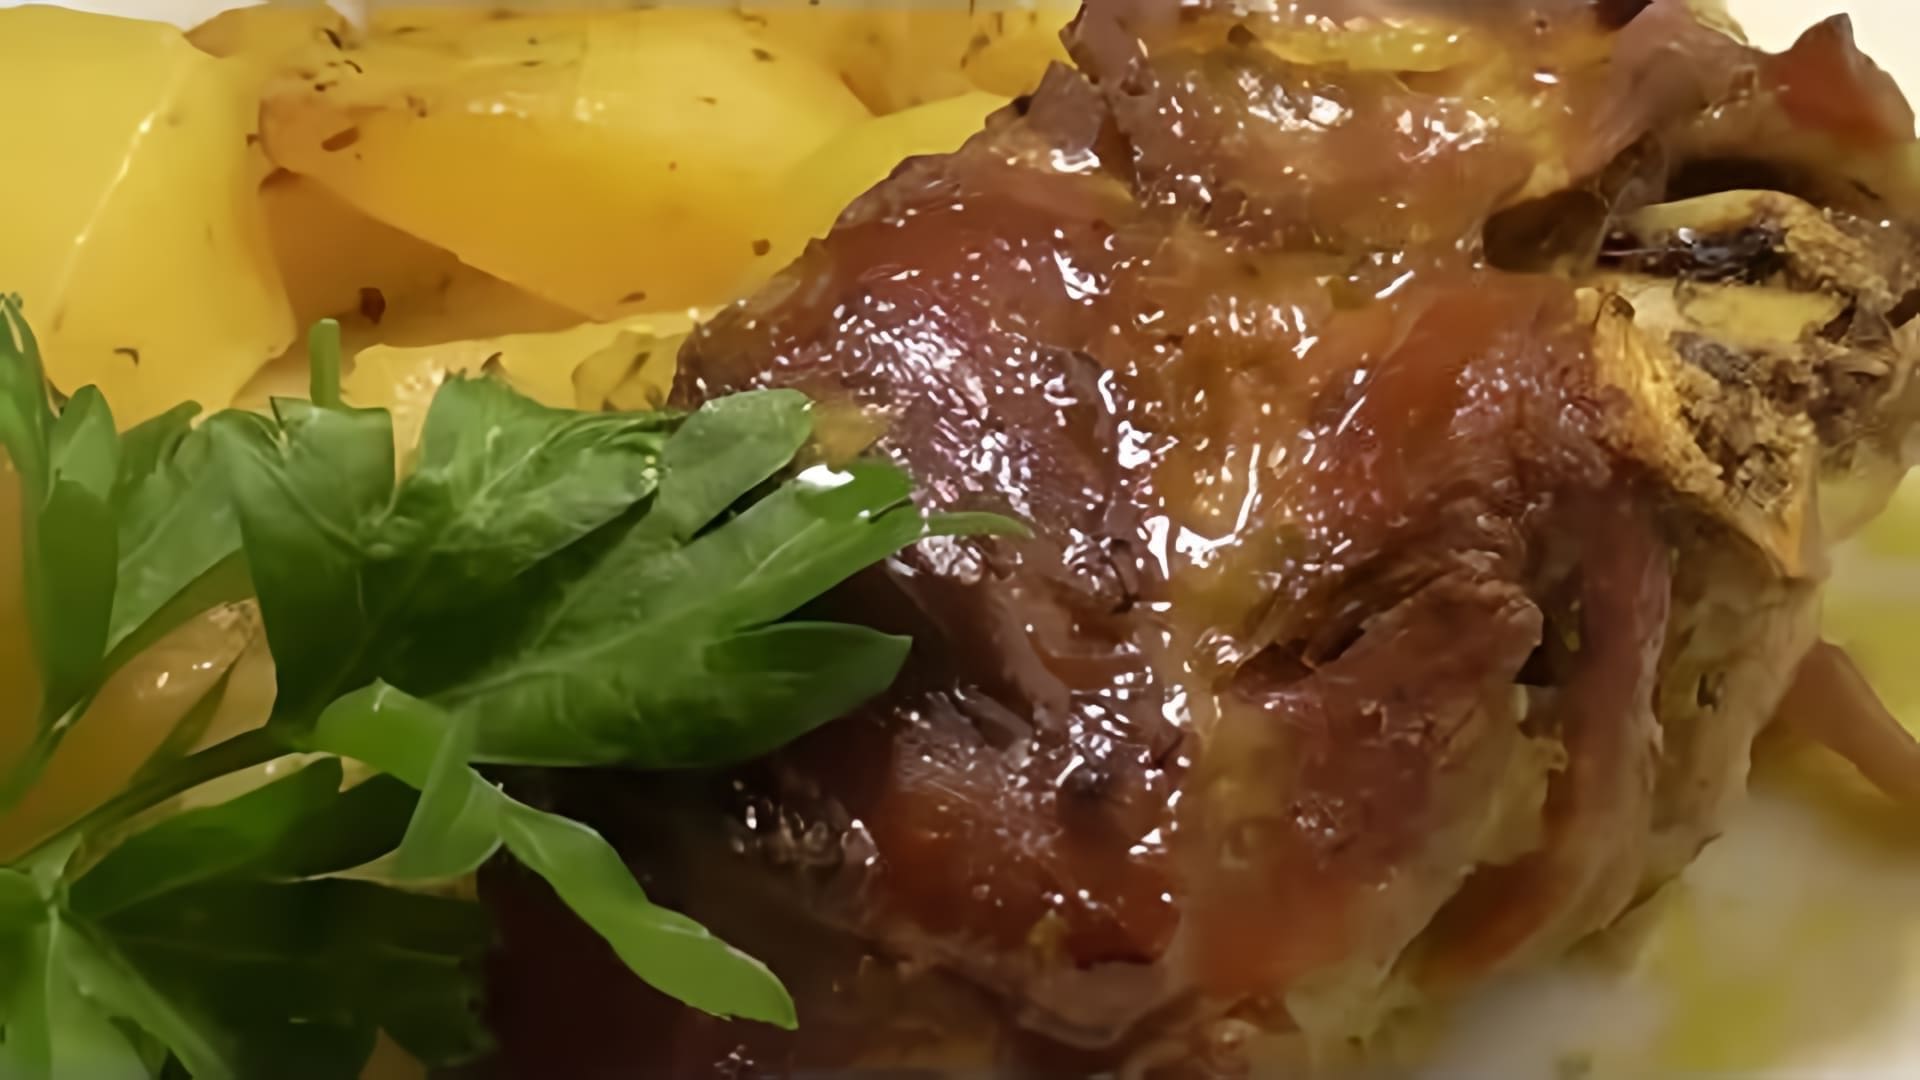 В этом видео демонстрируется рецепт приготовления козьего мяса, которое в Греции называется ка каки бу